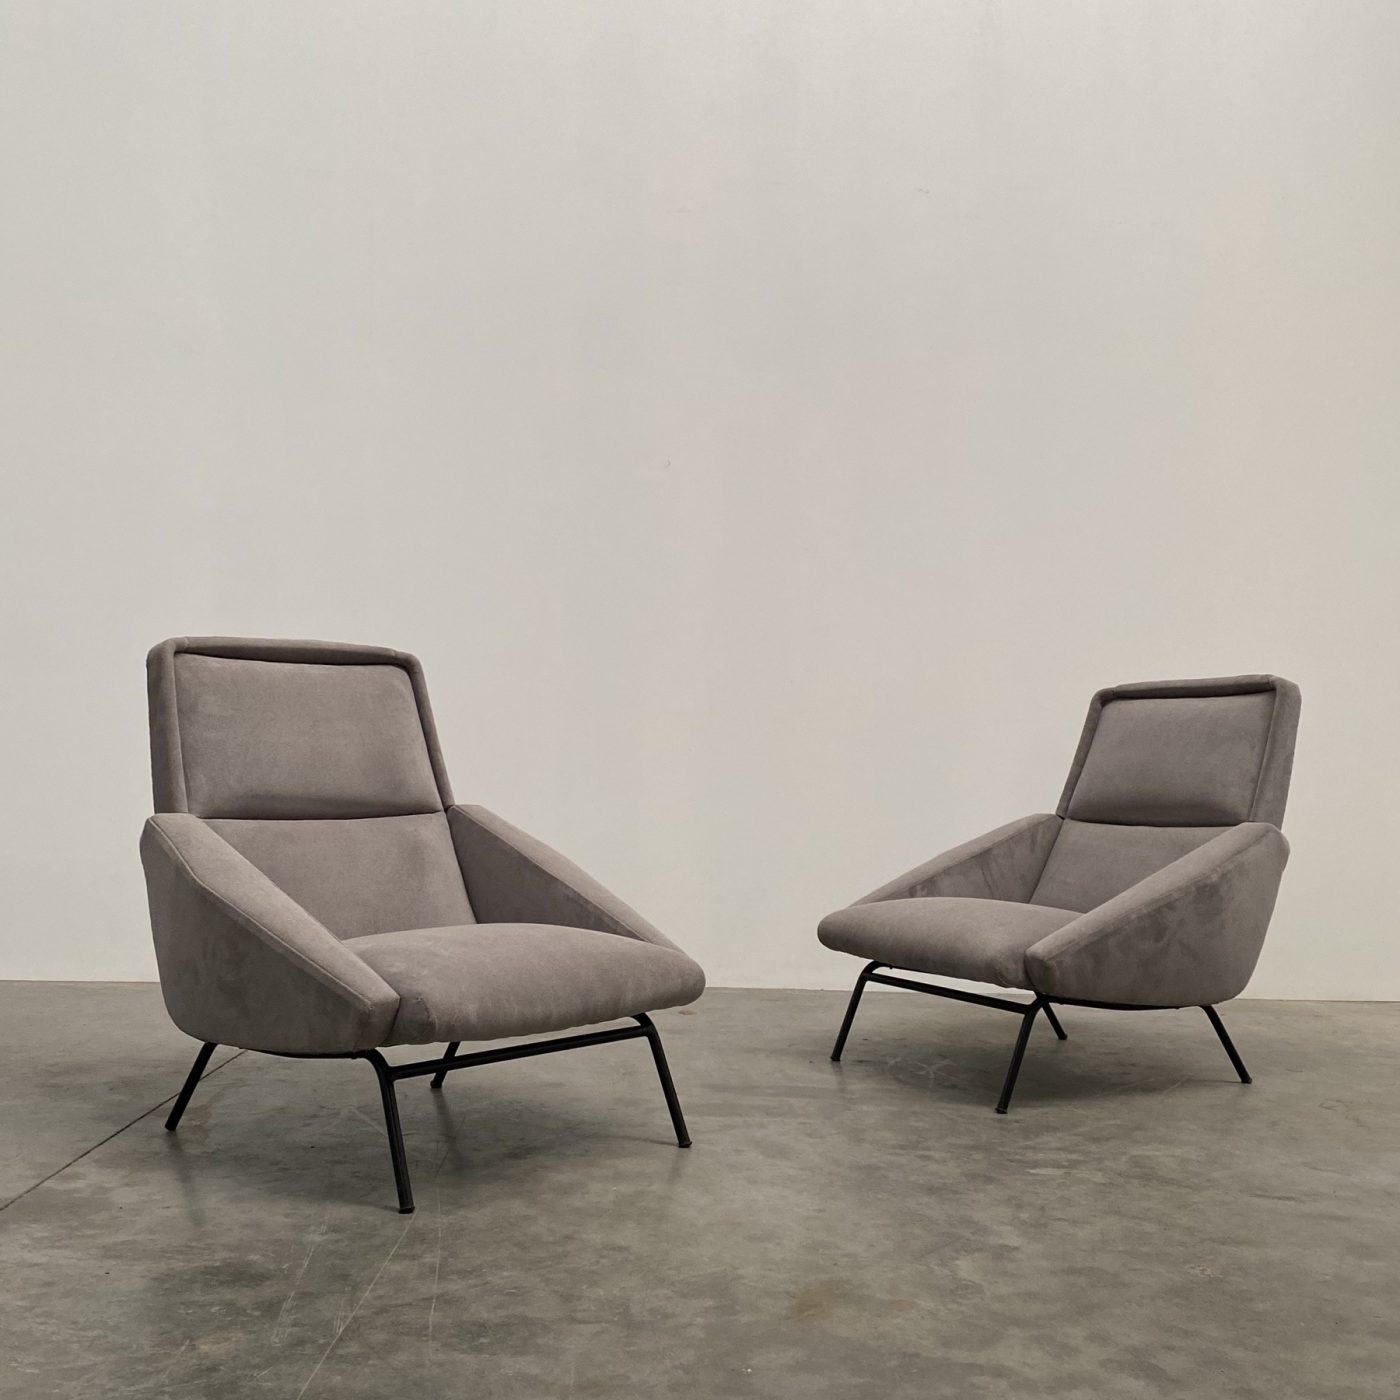 objet-vagabond-guermonprez-armchairs0003